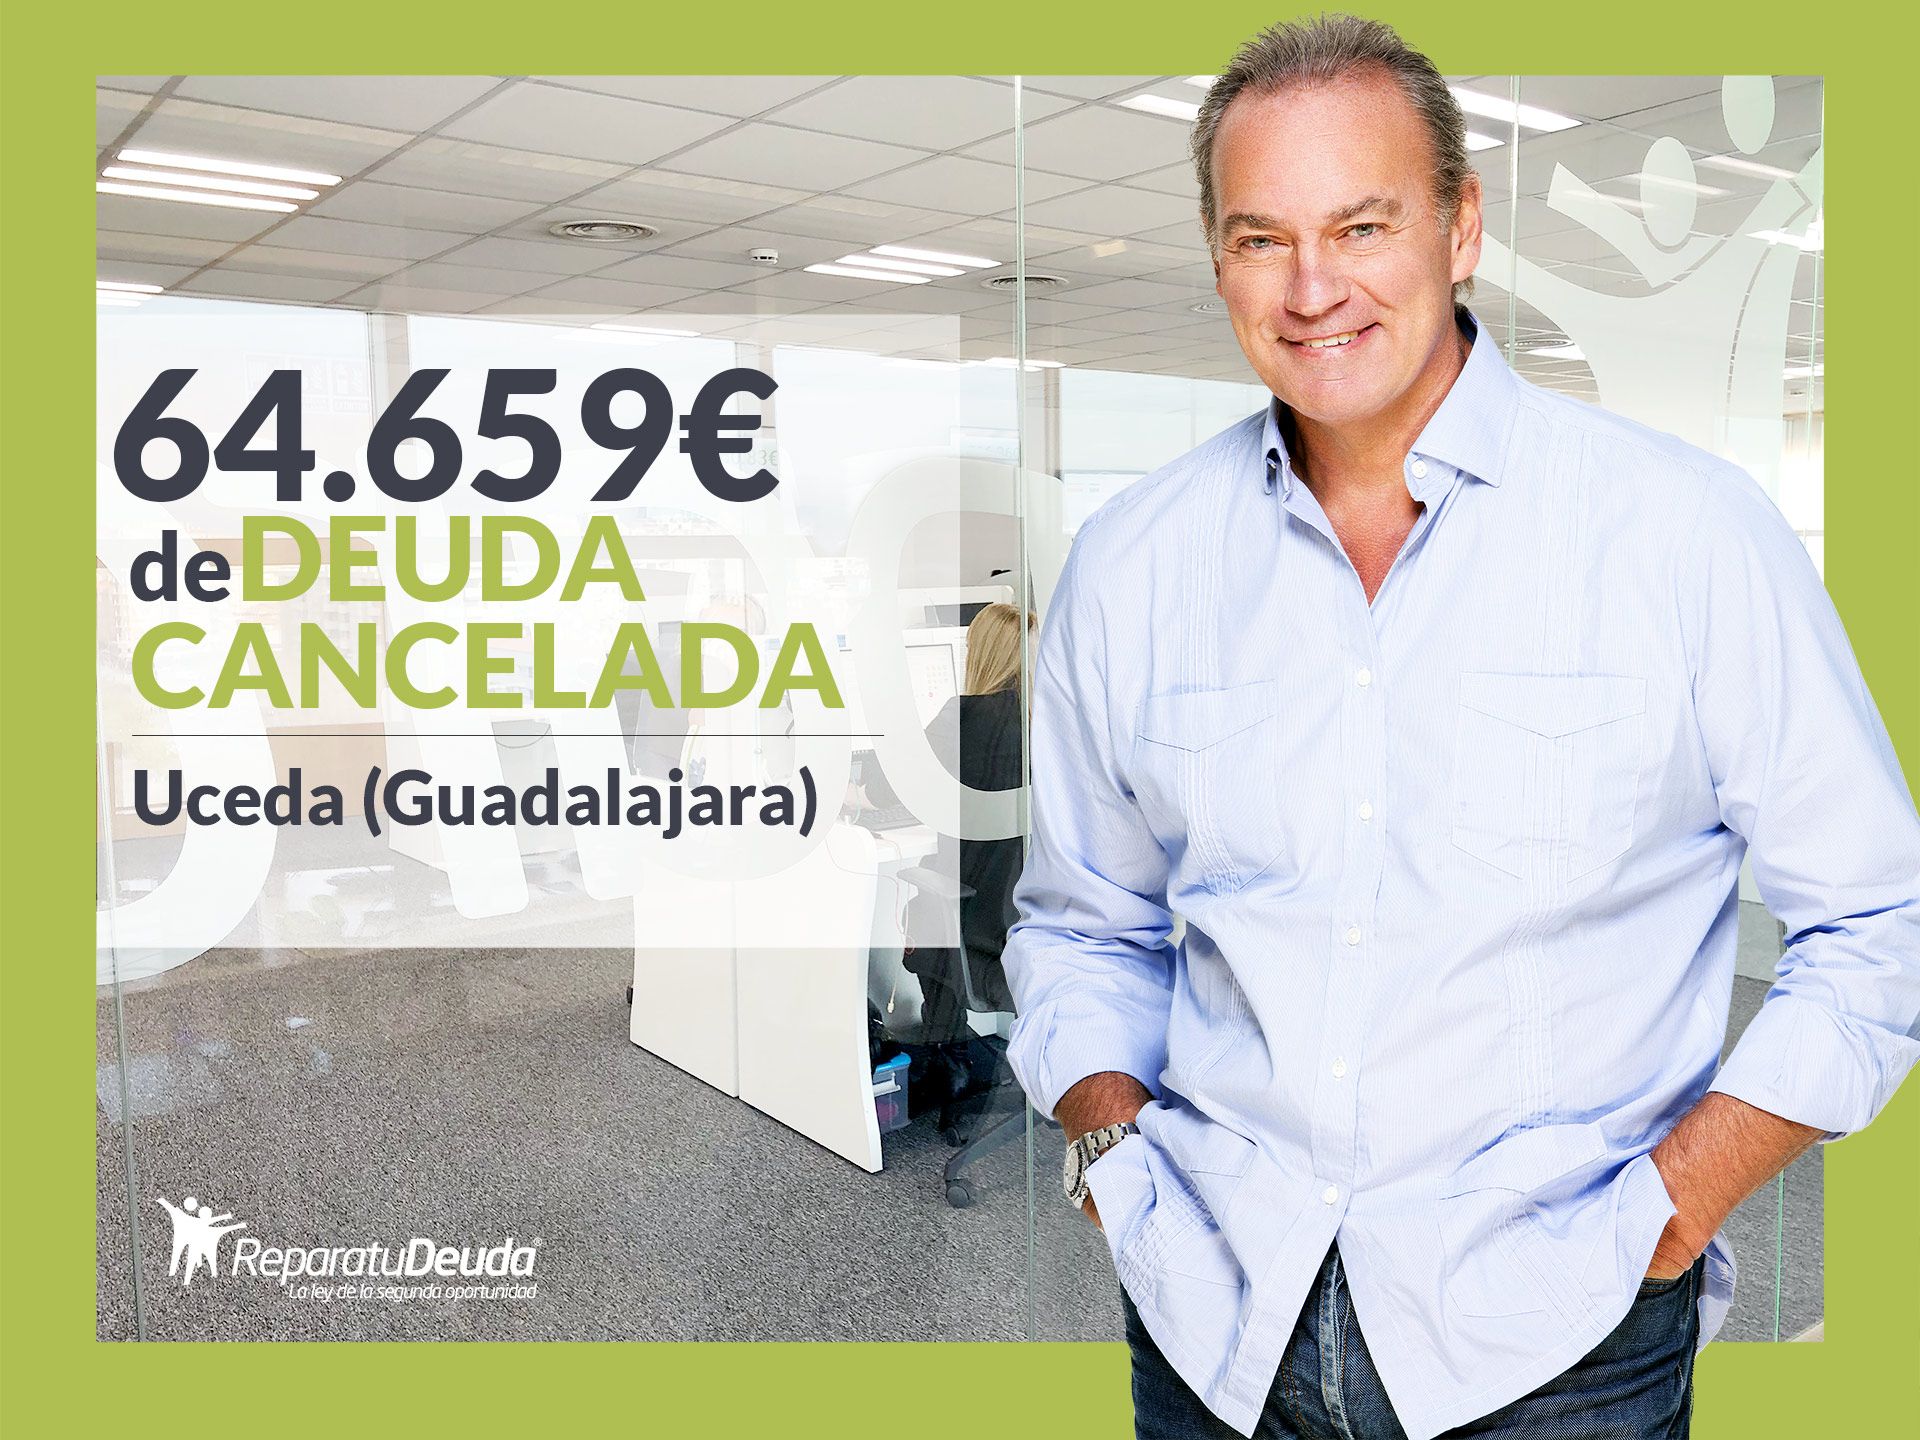 Repara tu Deuda Abogados cancela 64.659? en Uceda (Guadalajara) con la Ley de Segunda Oportunidad